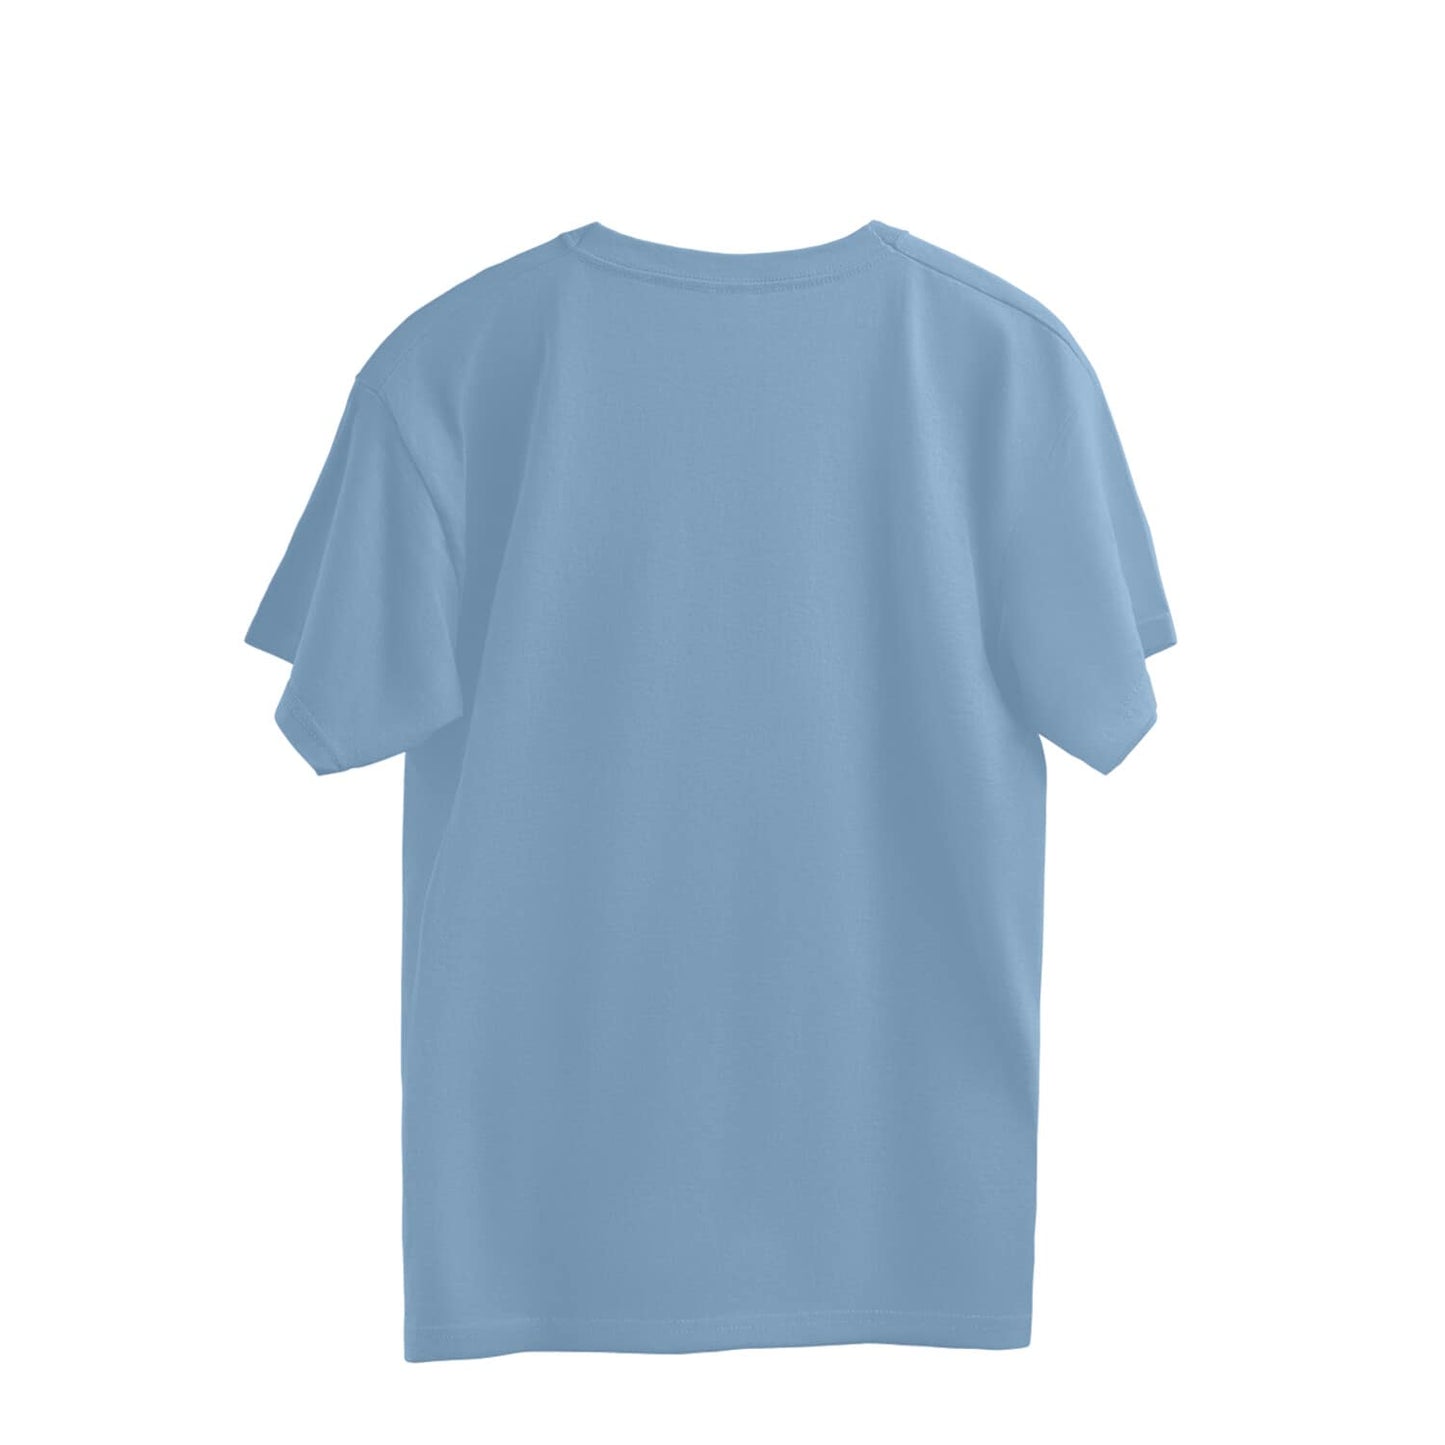 Trenfort Social Awkwardness OverSized T-shirt for Men